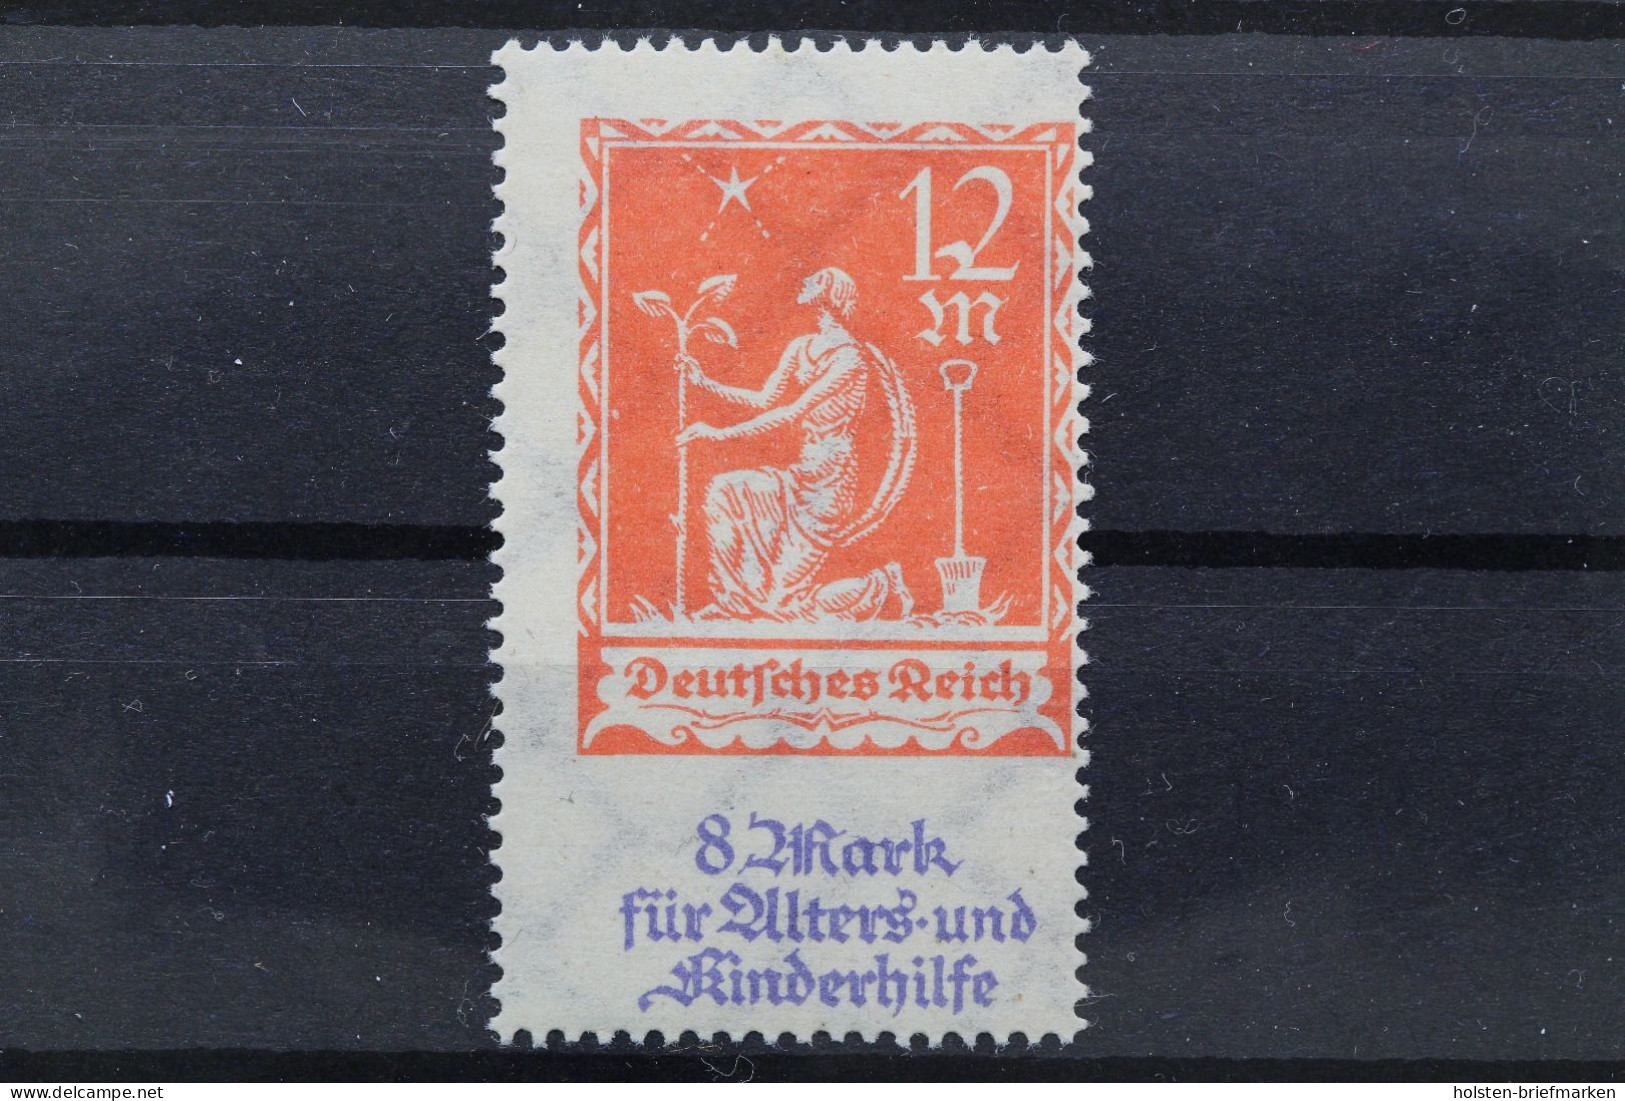 Deutsches Reich, MiNr. 234 PF III, Postfrisch, Geprüft Infla - Plaatfouten & Curiosa